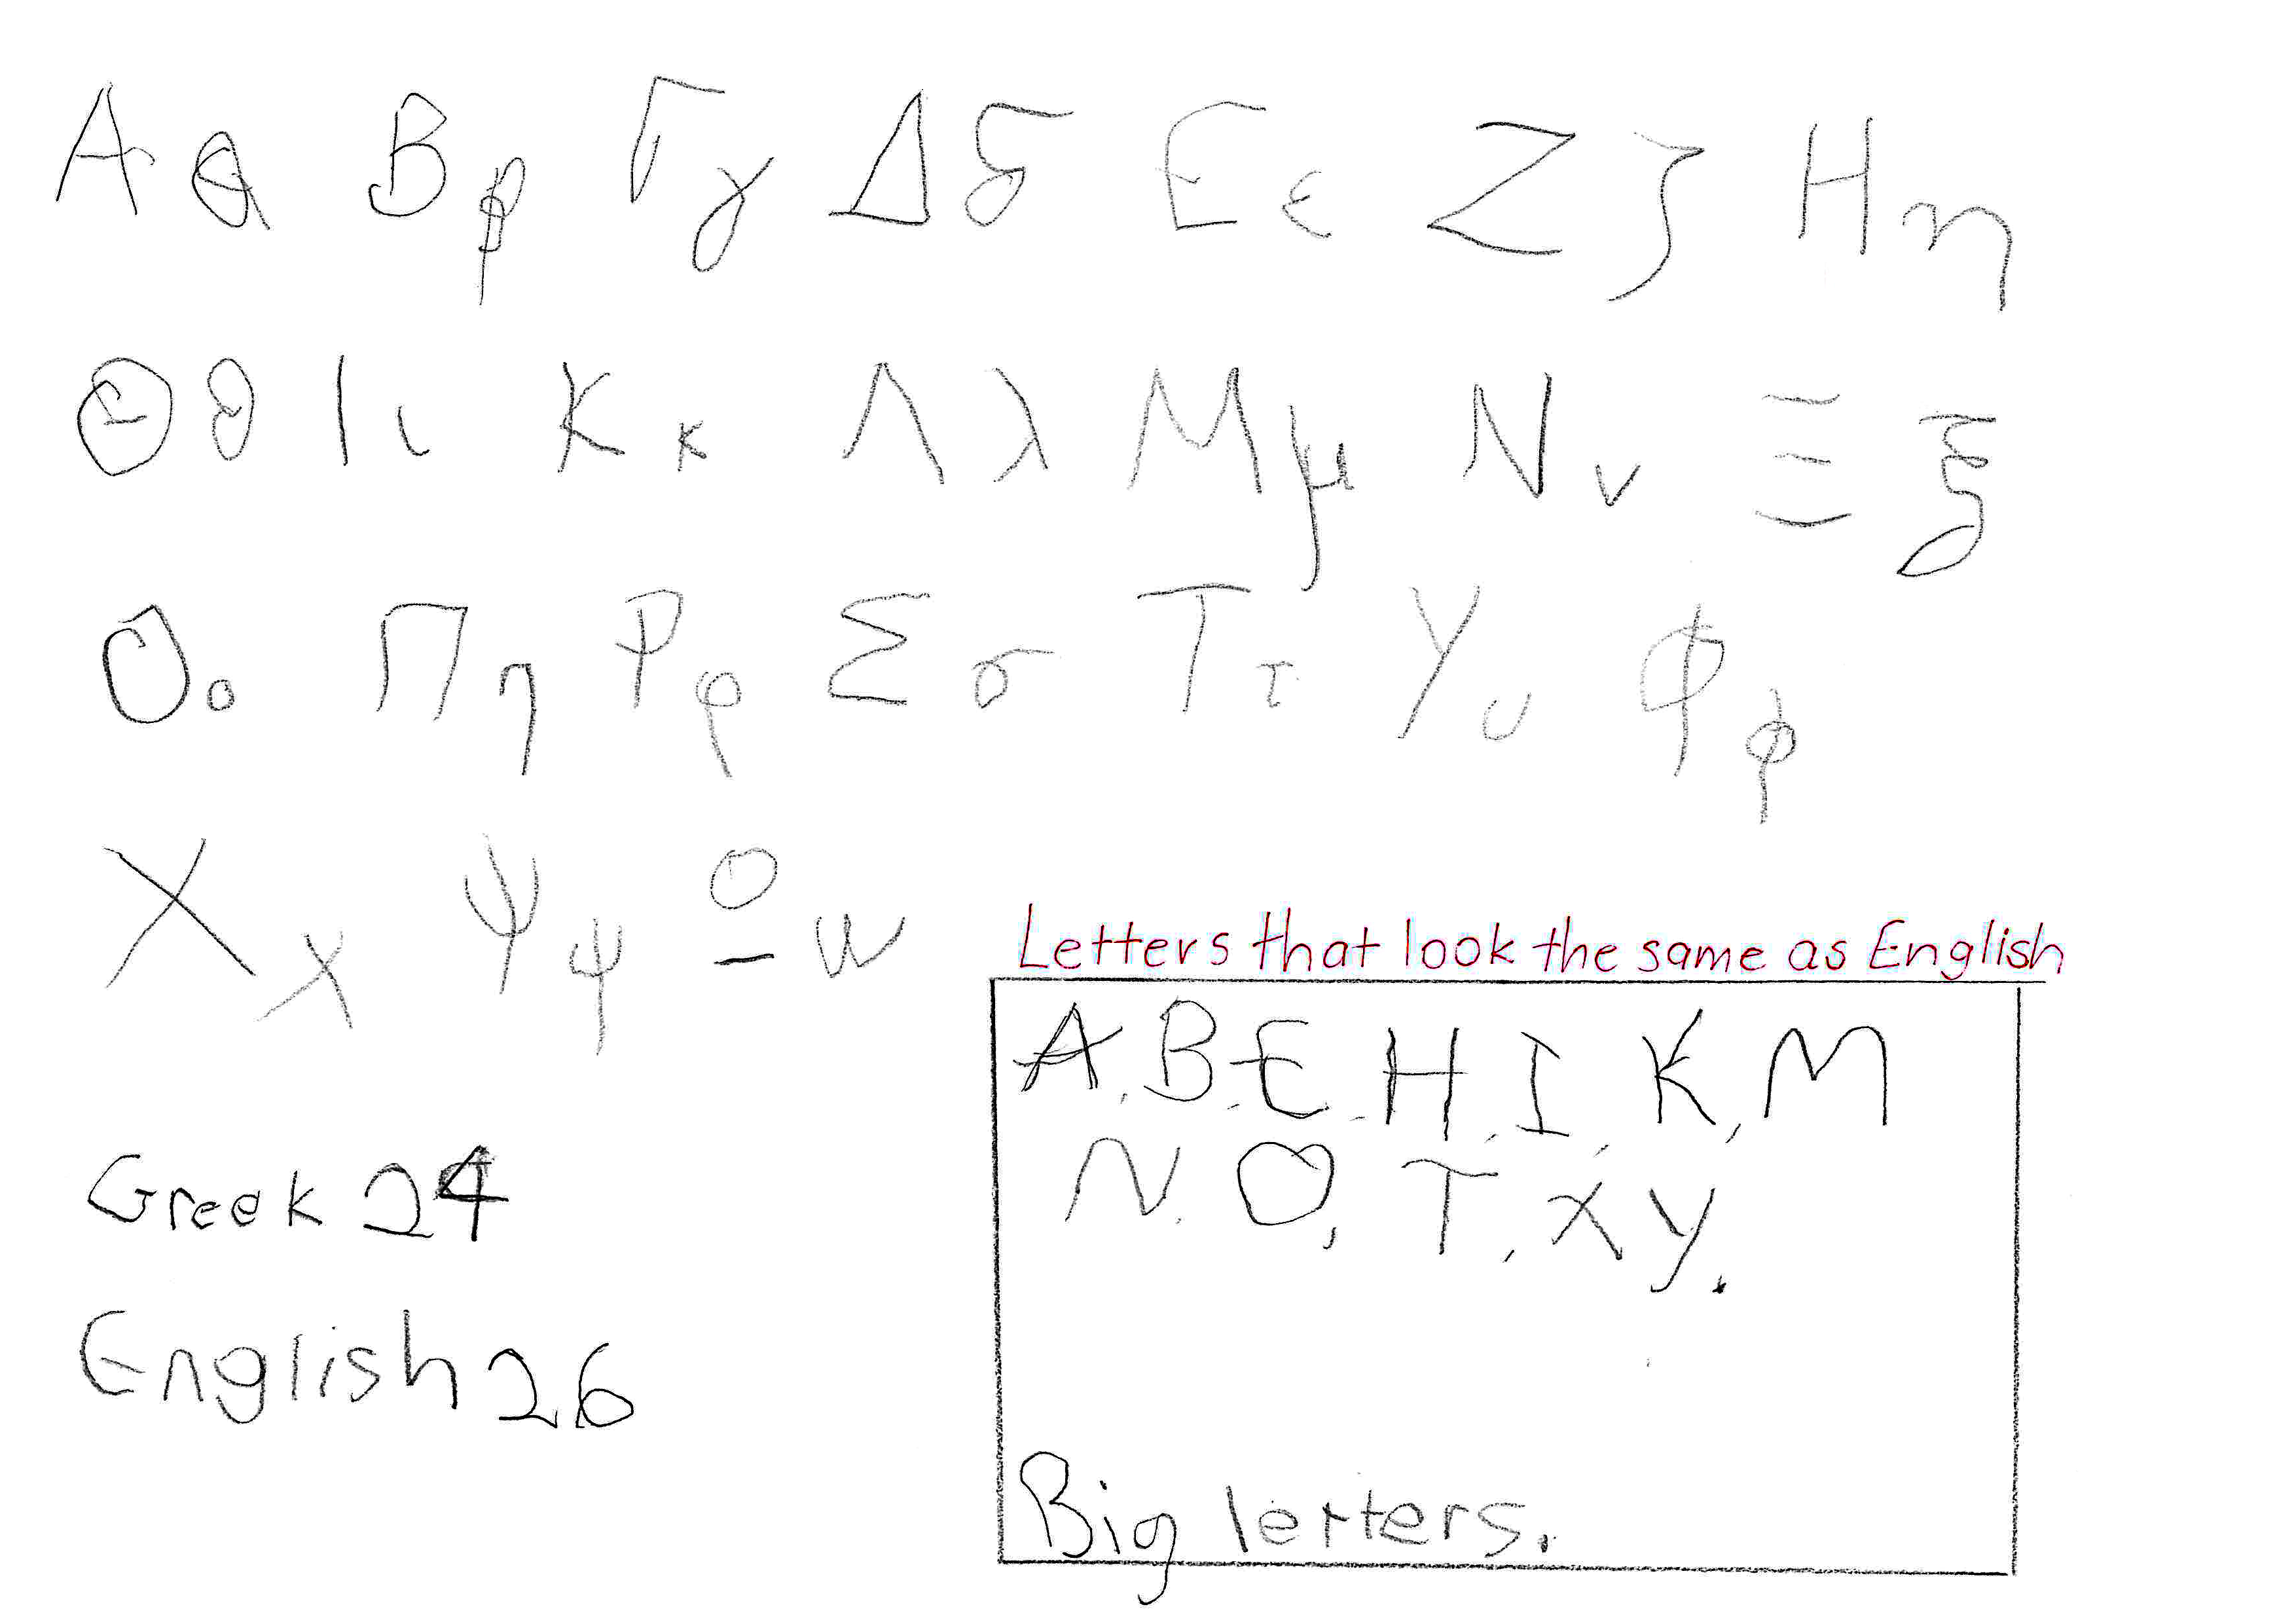 Greek alphabet in order